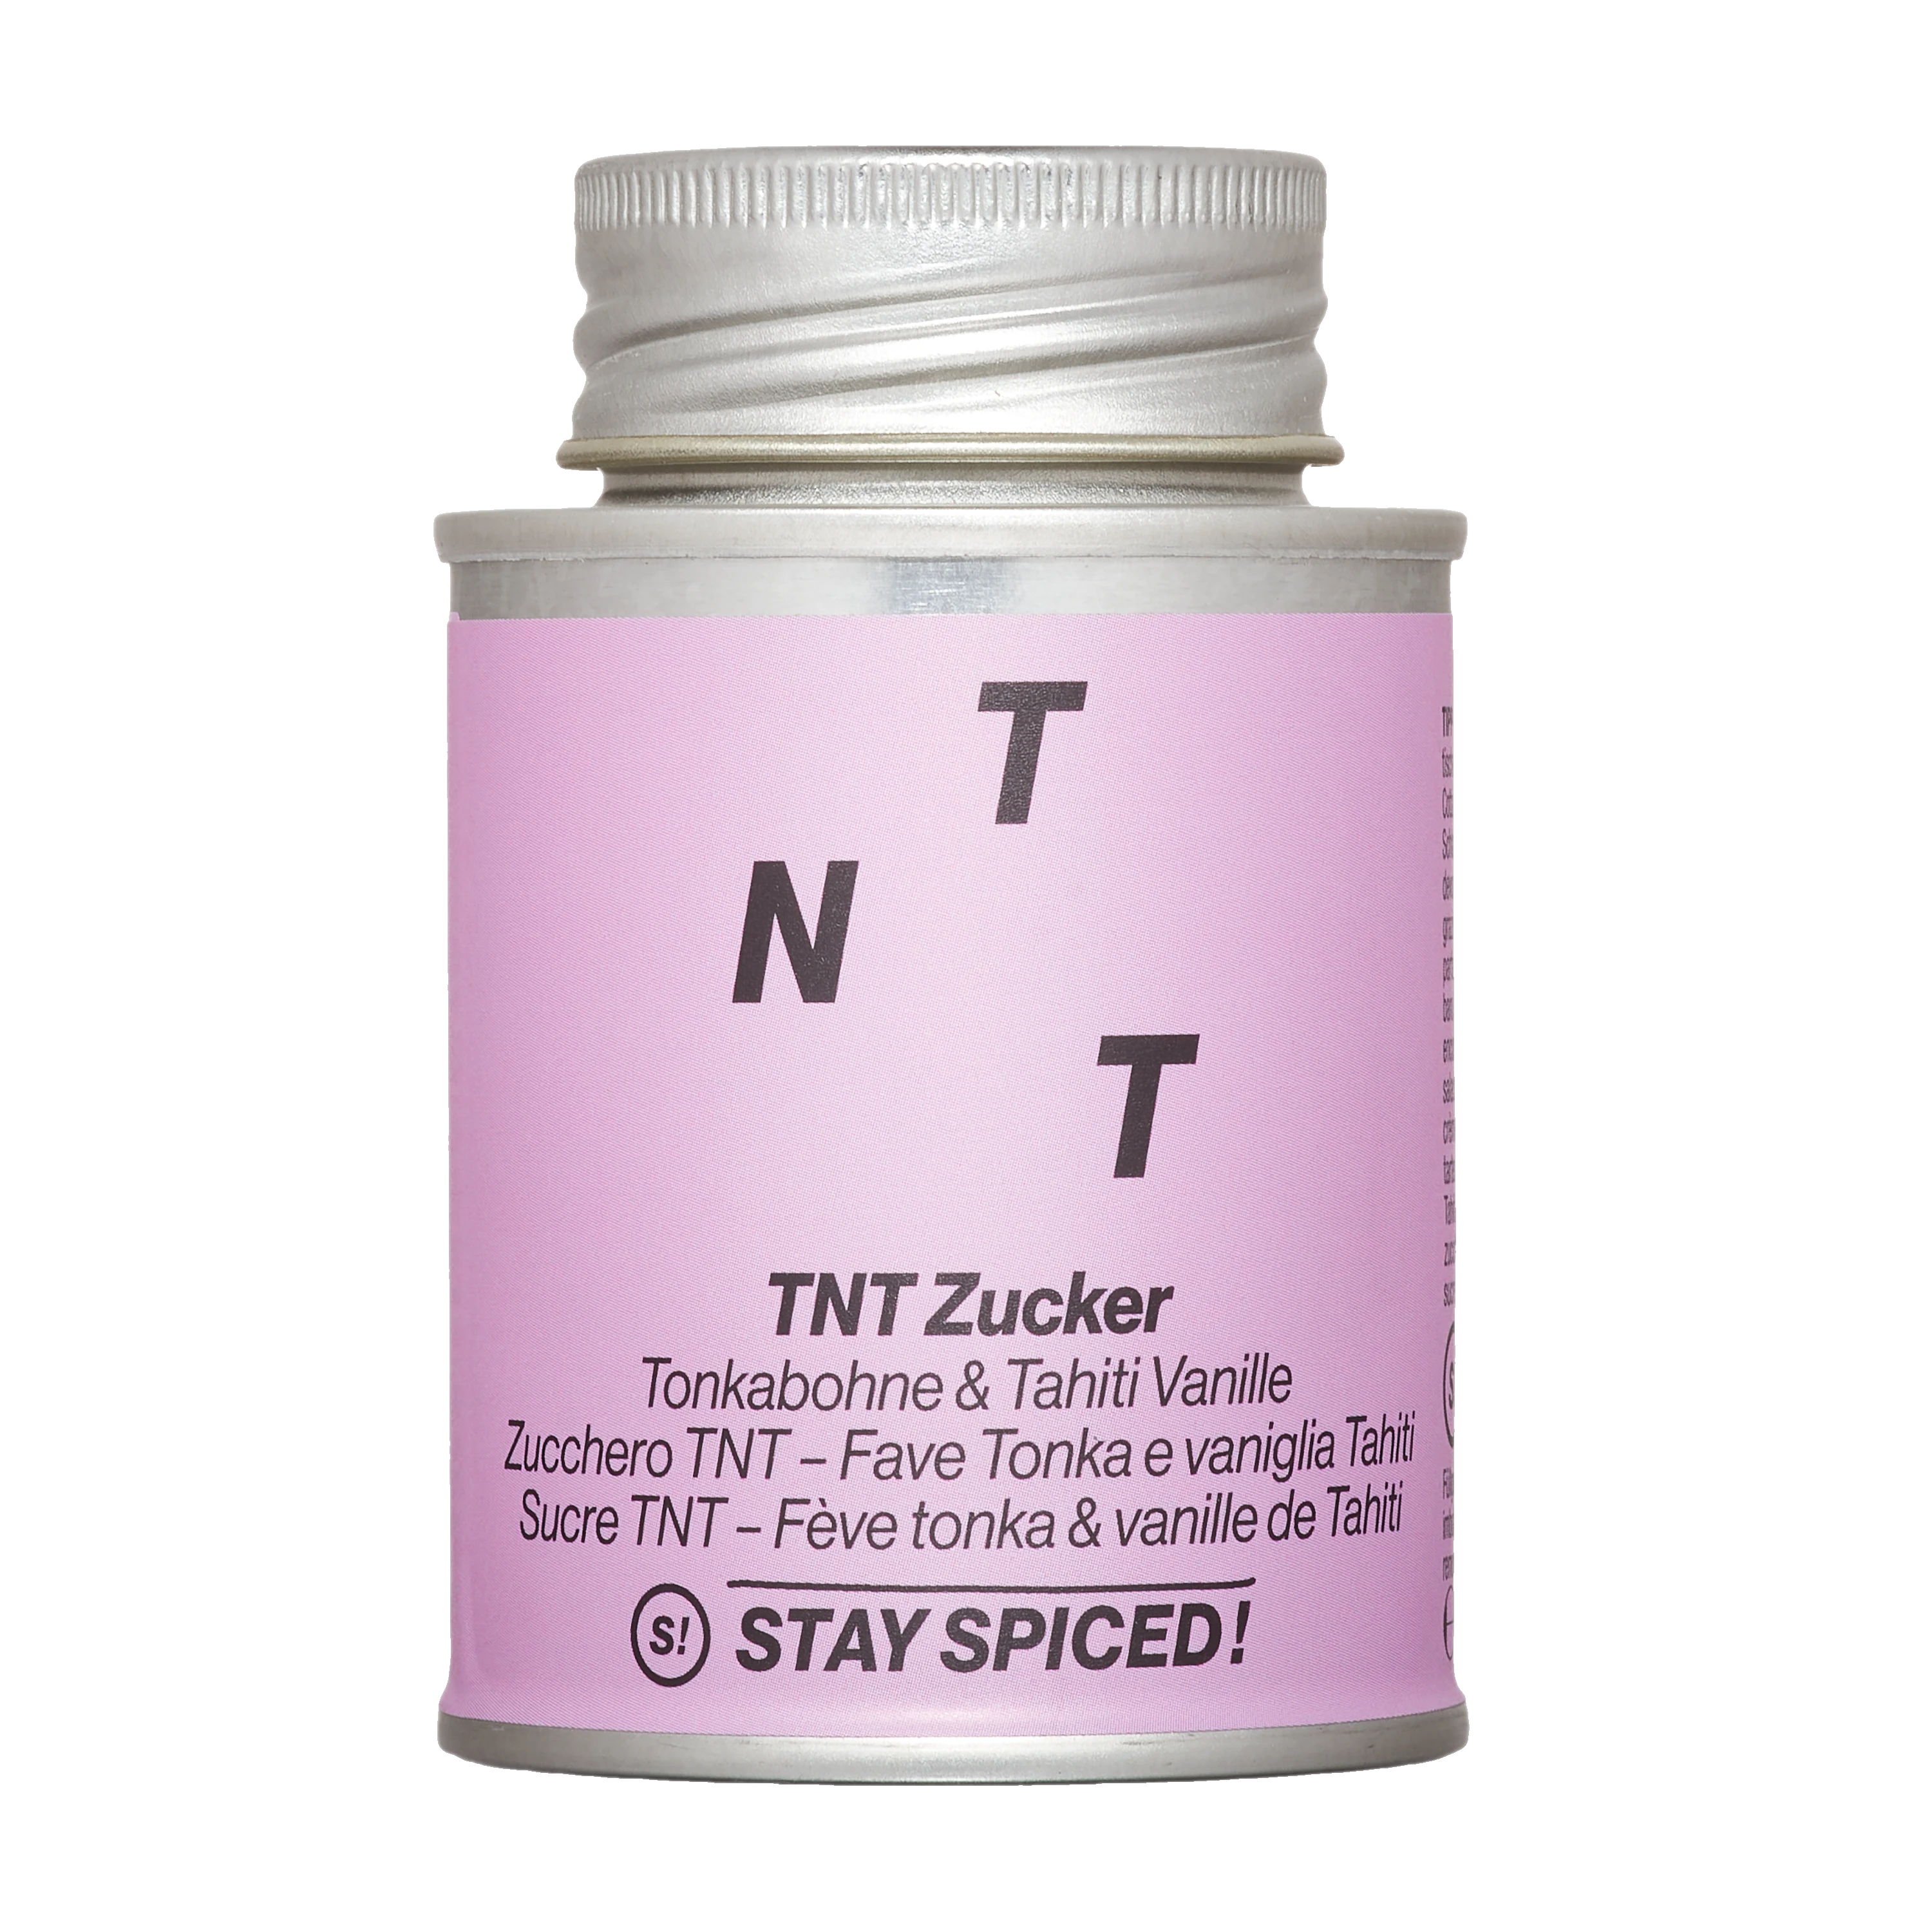 Stay Spiced TNT Zucker